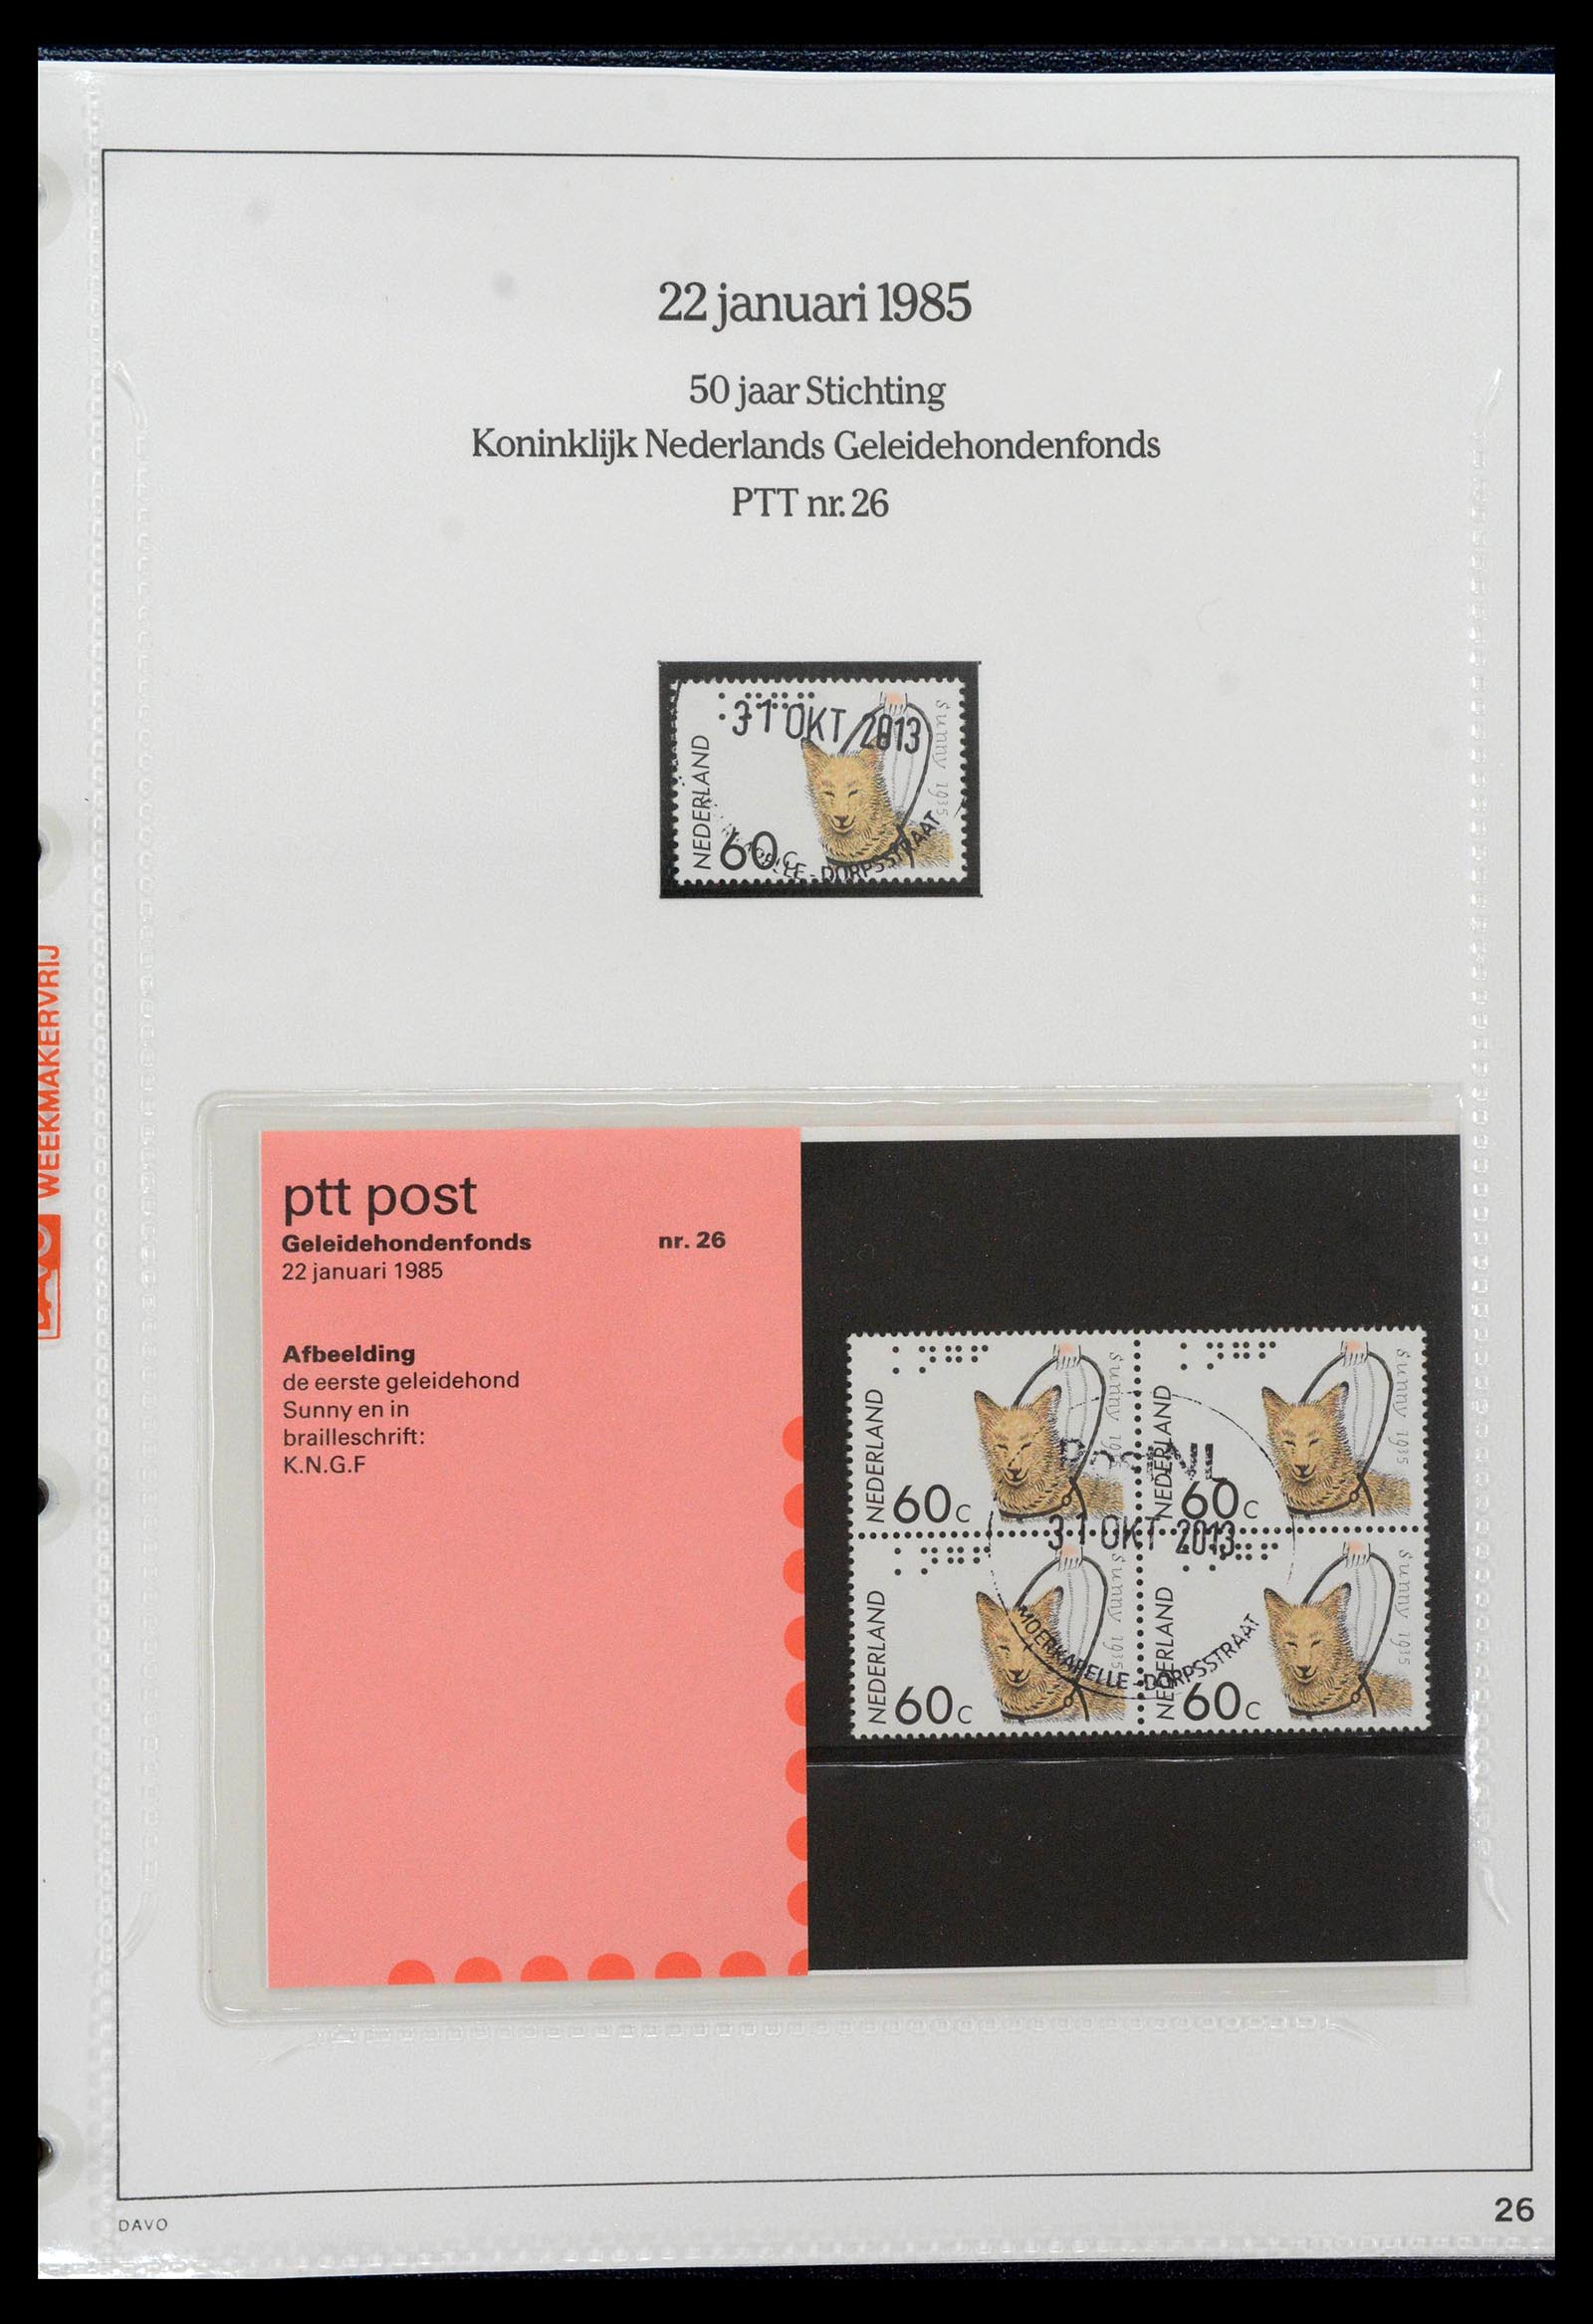 39121 0026 - Stamp collection 39121 Netherlands presentationpacks 1982-2001.